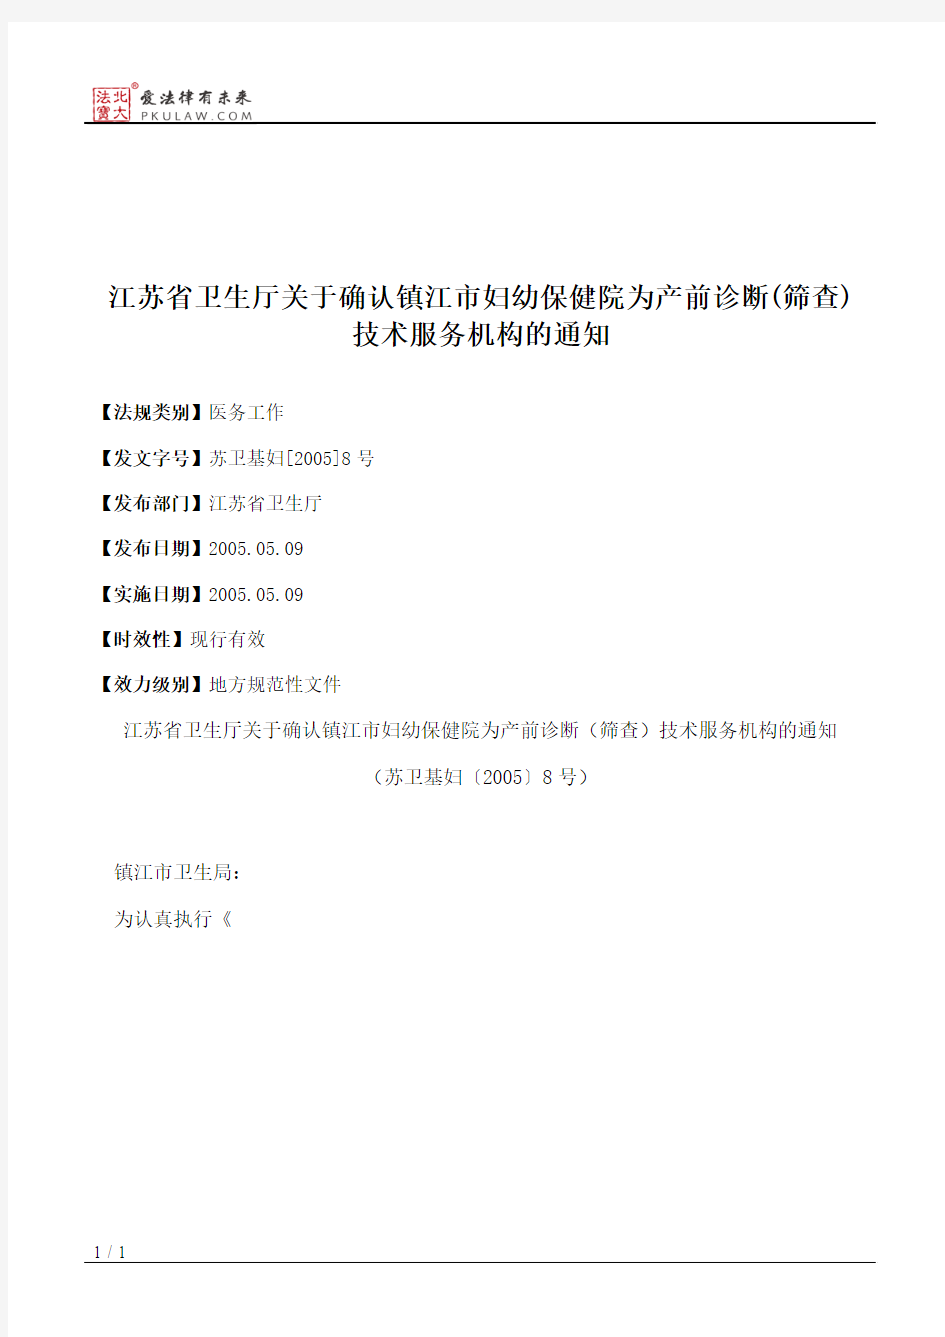 江苏省卫生厅关于确认镇江市妇幼保健院为产前诊断(筛查)技术服务